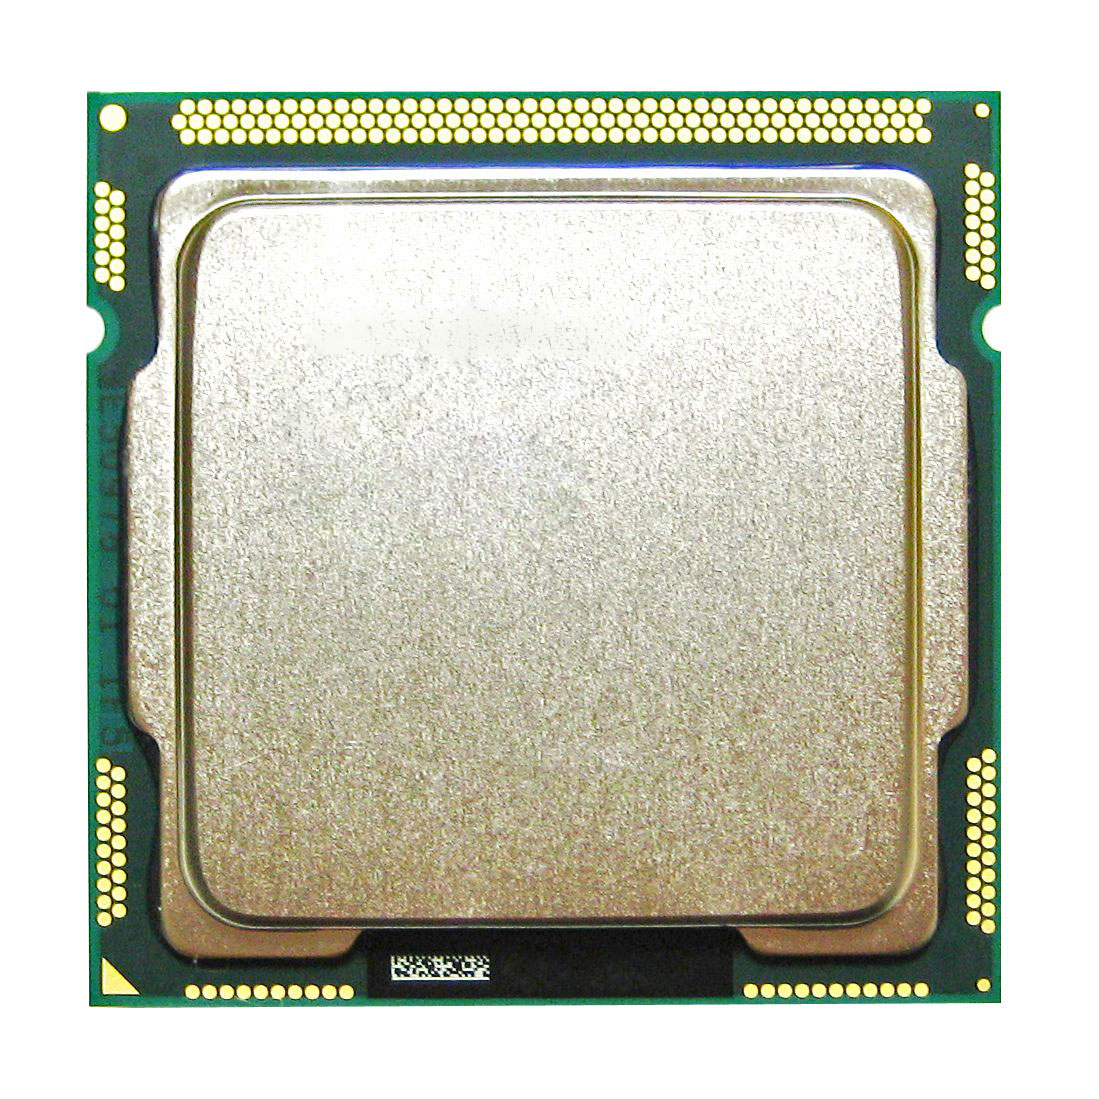 1355940 Intel Core i5-2500K Quad Core 3.30GHz 5.00GT/s DMI 6MB L3 Cache Socket LGA1155 Desktop Processor